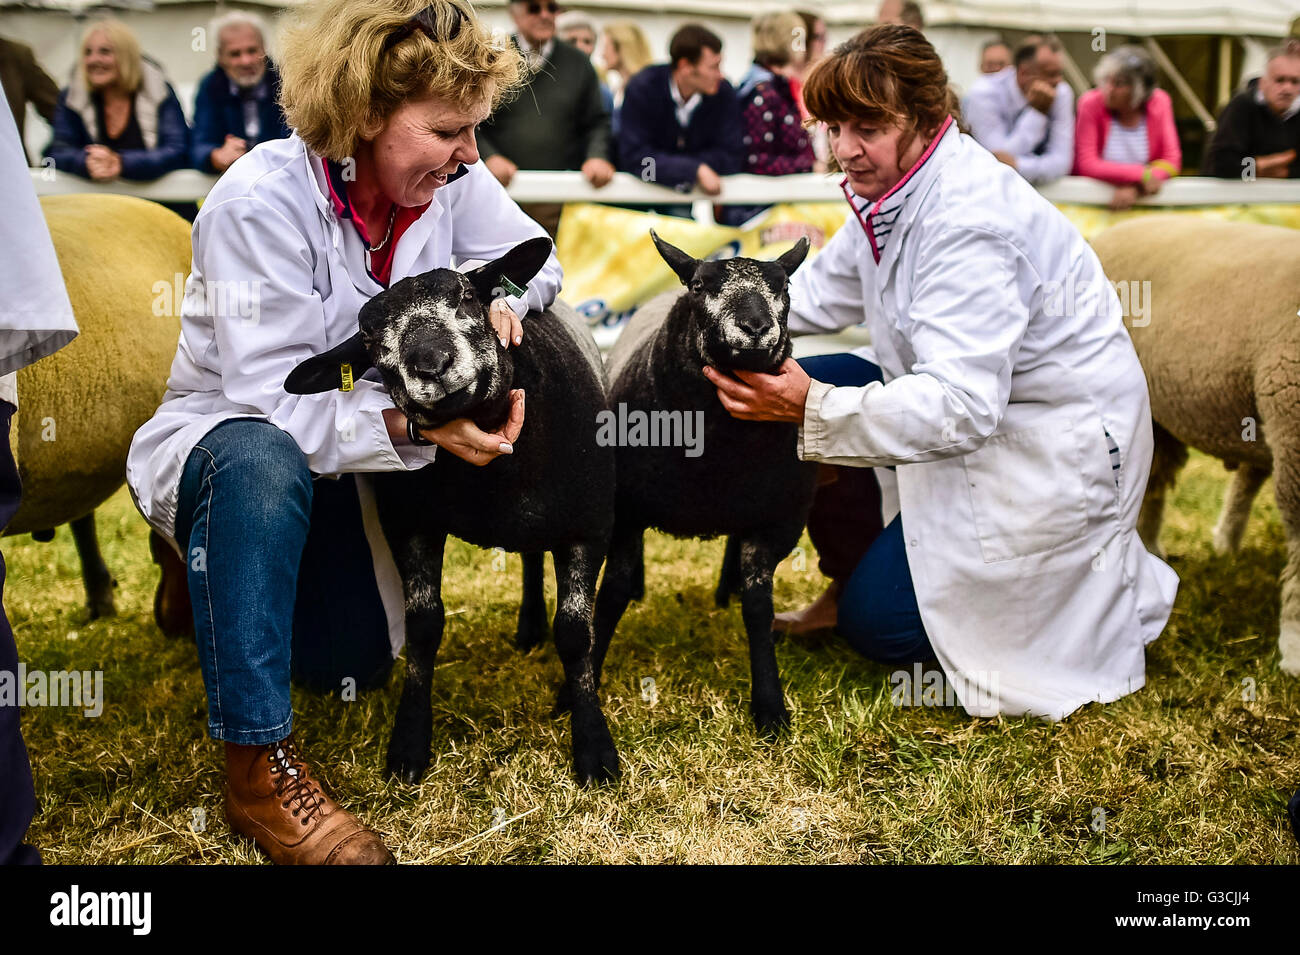 Les moutons sont stabilisés dans l'arène où les meilleurs couples nicheurs sont exposés sur deux jours au Royal Cornwall Show, Wadebridge, Cornwall. Banque D'Images